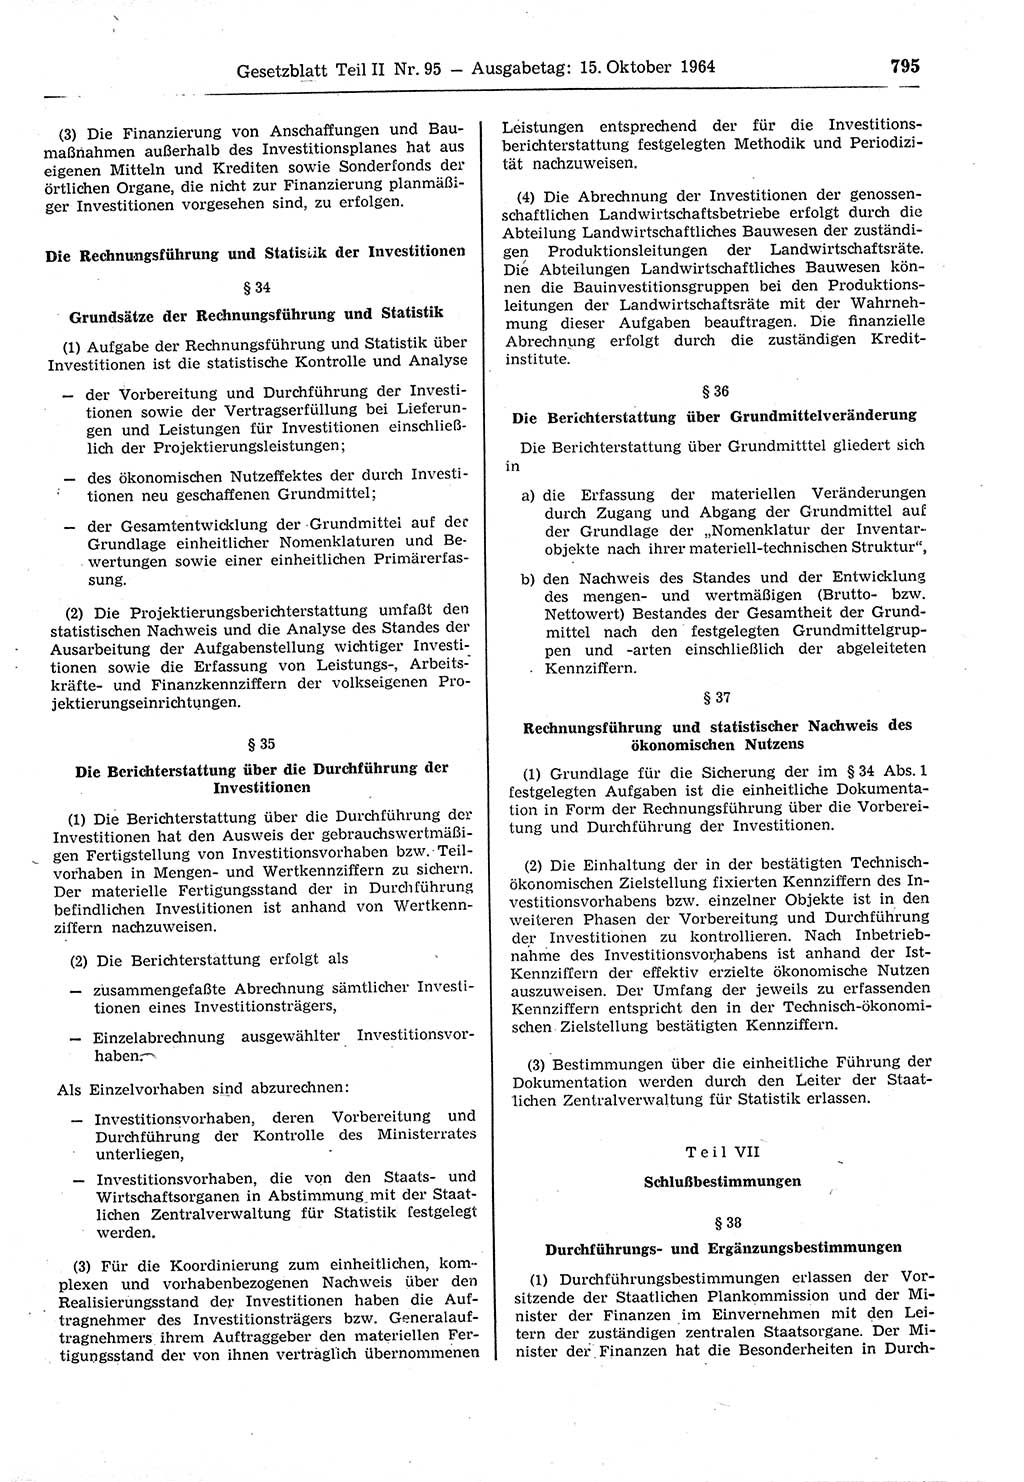 Gesetzblatt (GBl.) der Deutschen Demokratischen Republik (DDR) Teil ⅠⅠ 1964, Seite 795 (GBl. DDR ⅠⅠ 1964, S. 795)